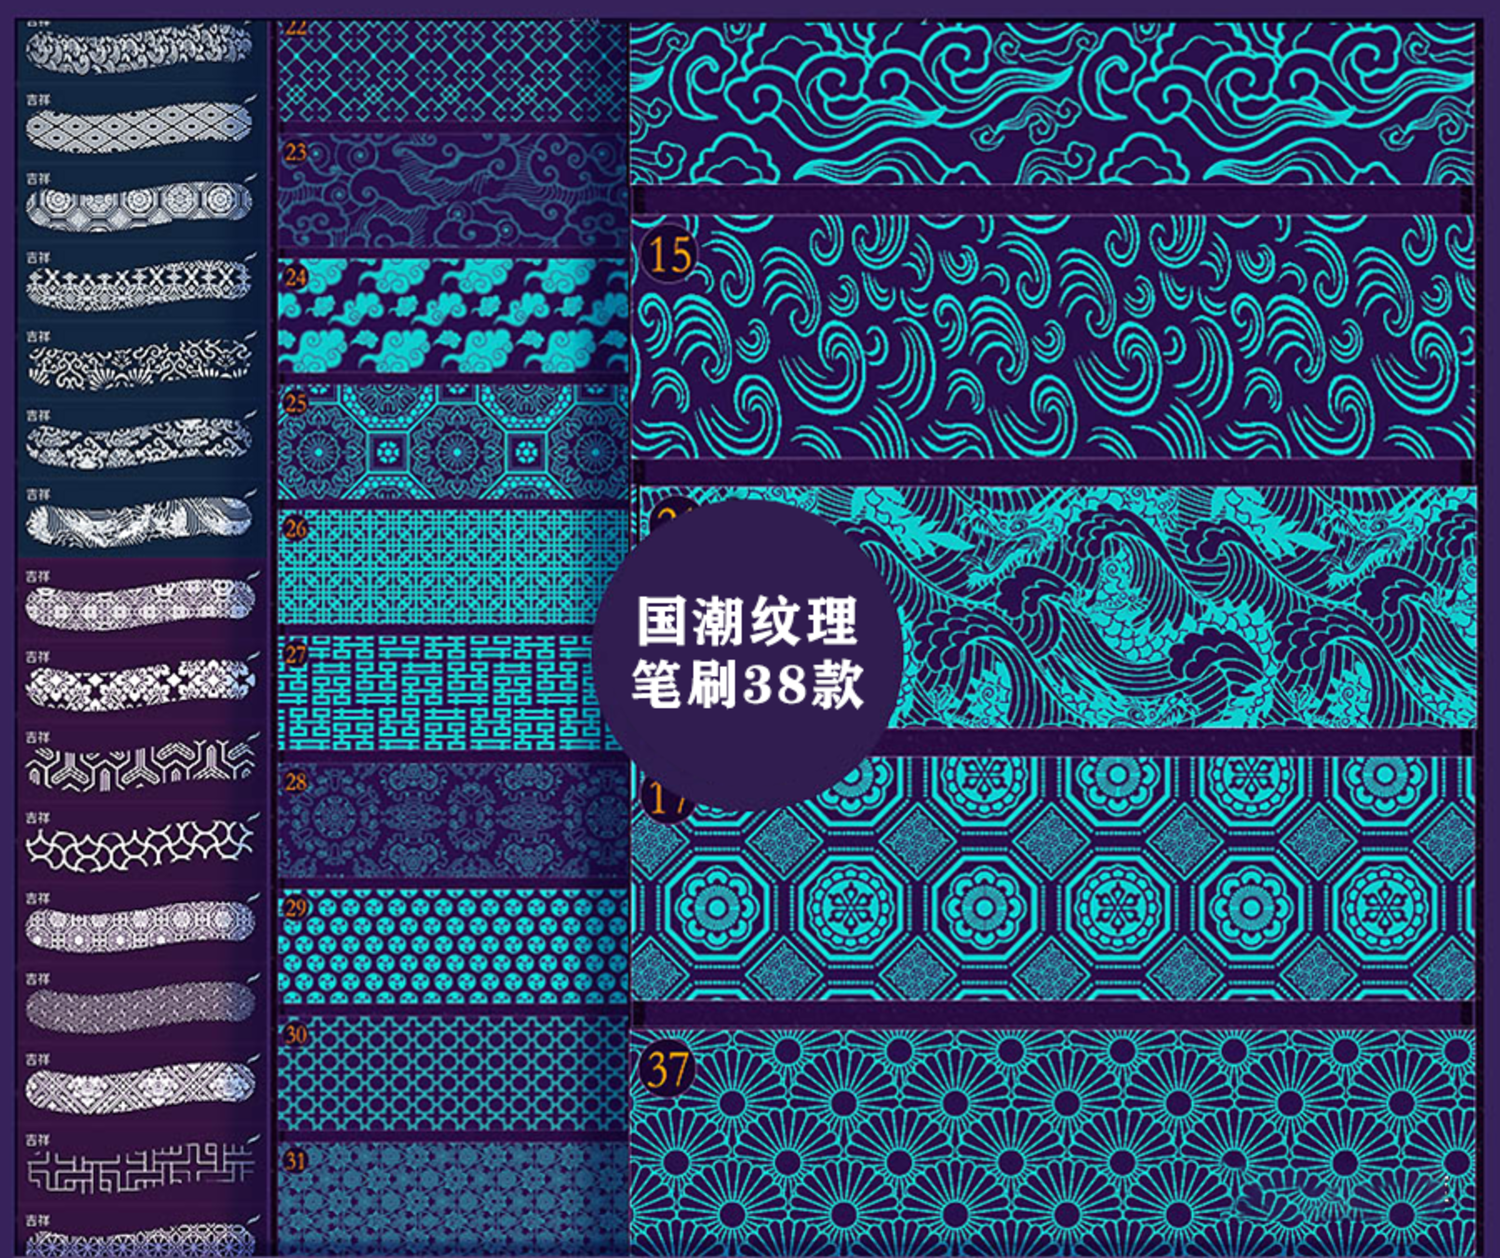 1203 传统中国风图纹笔刷合集包